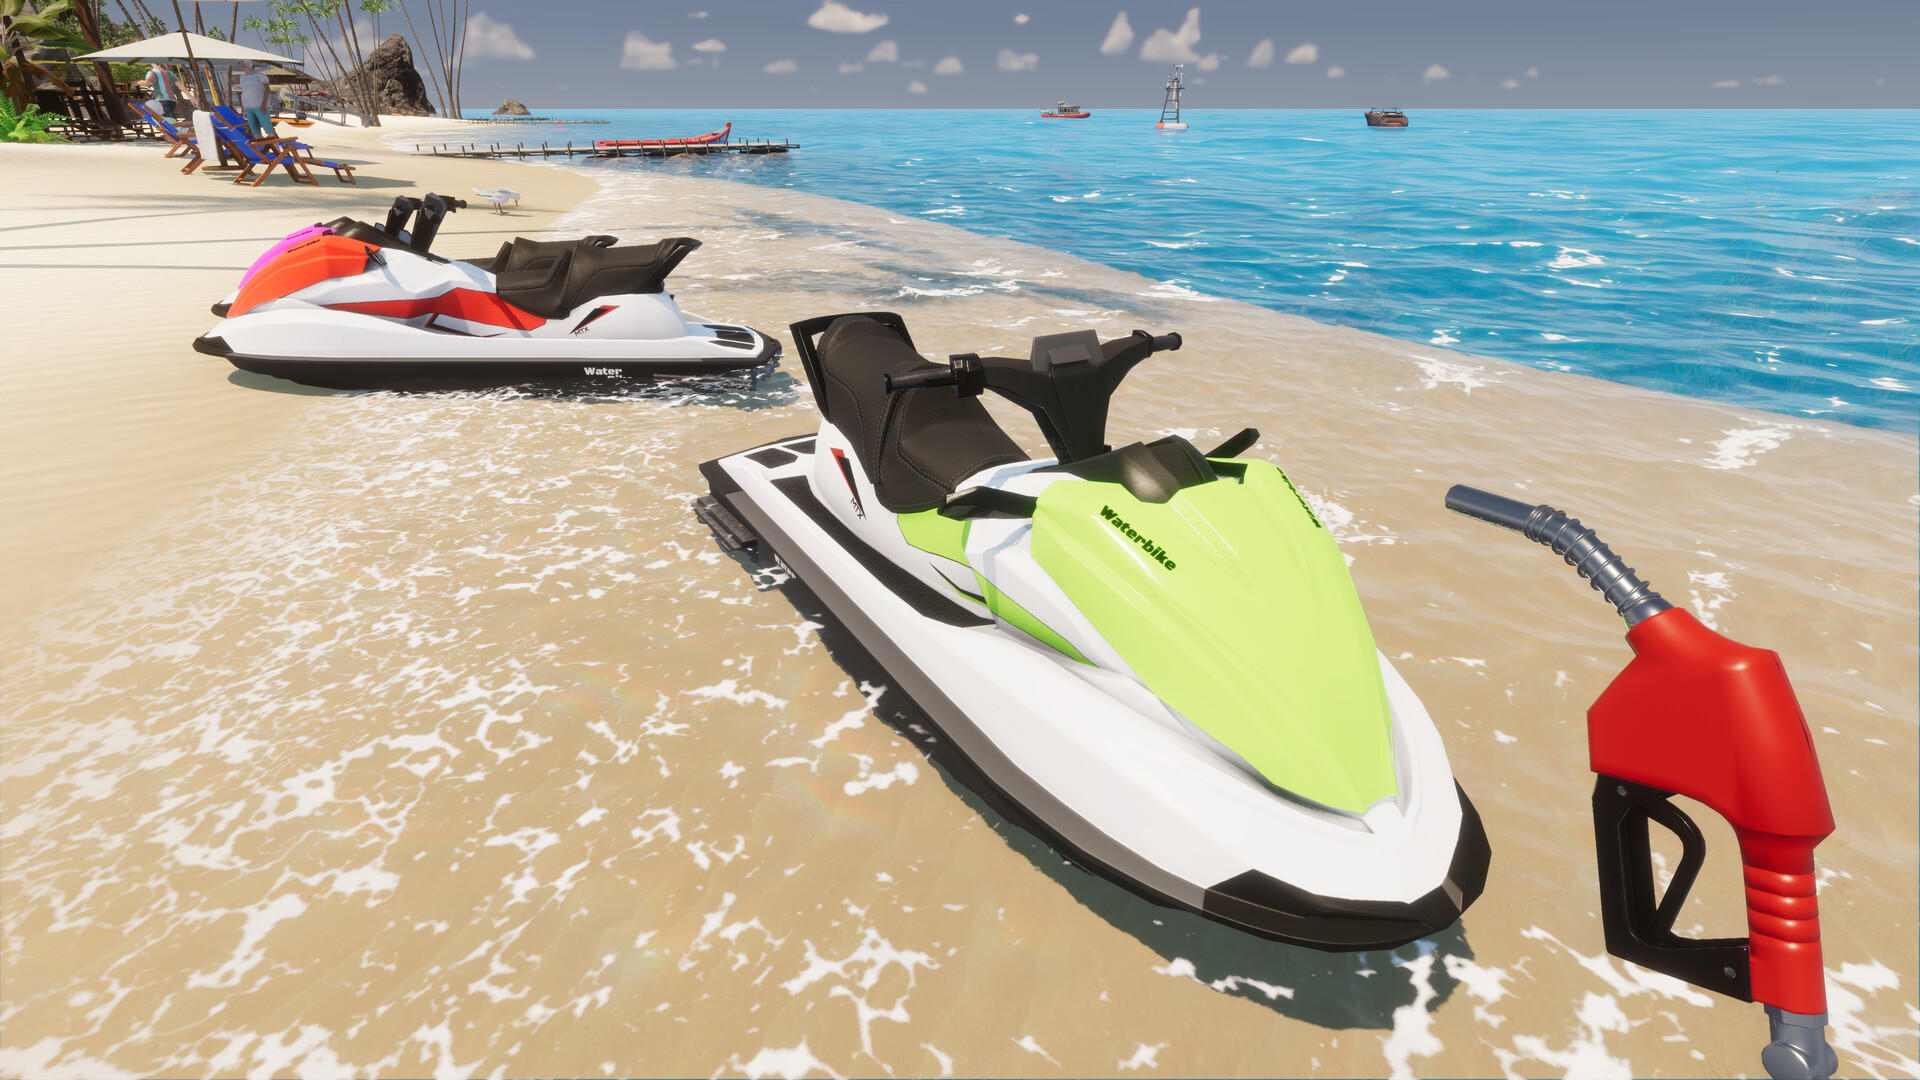 Screenshot of Paradise Beach Simulator